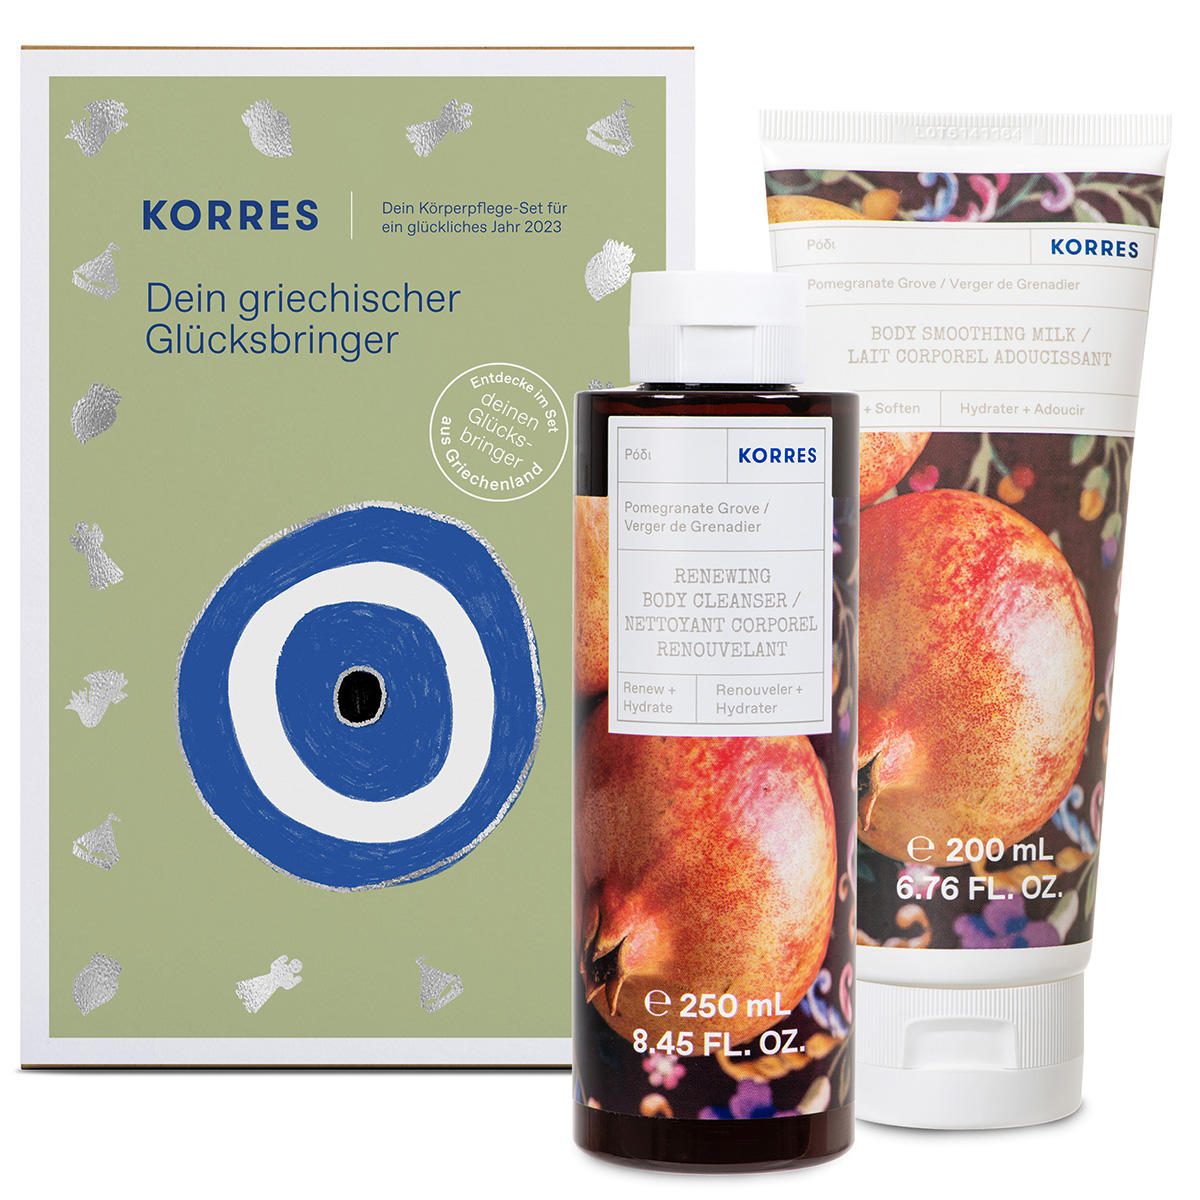 KORRES Greek winter fragrance collection  - 1